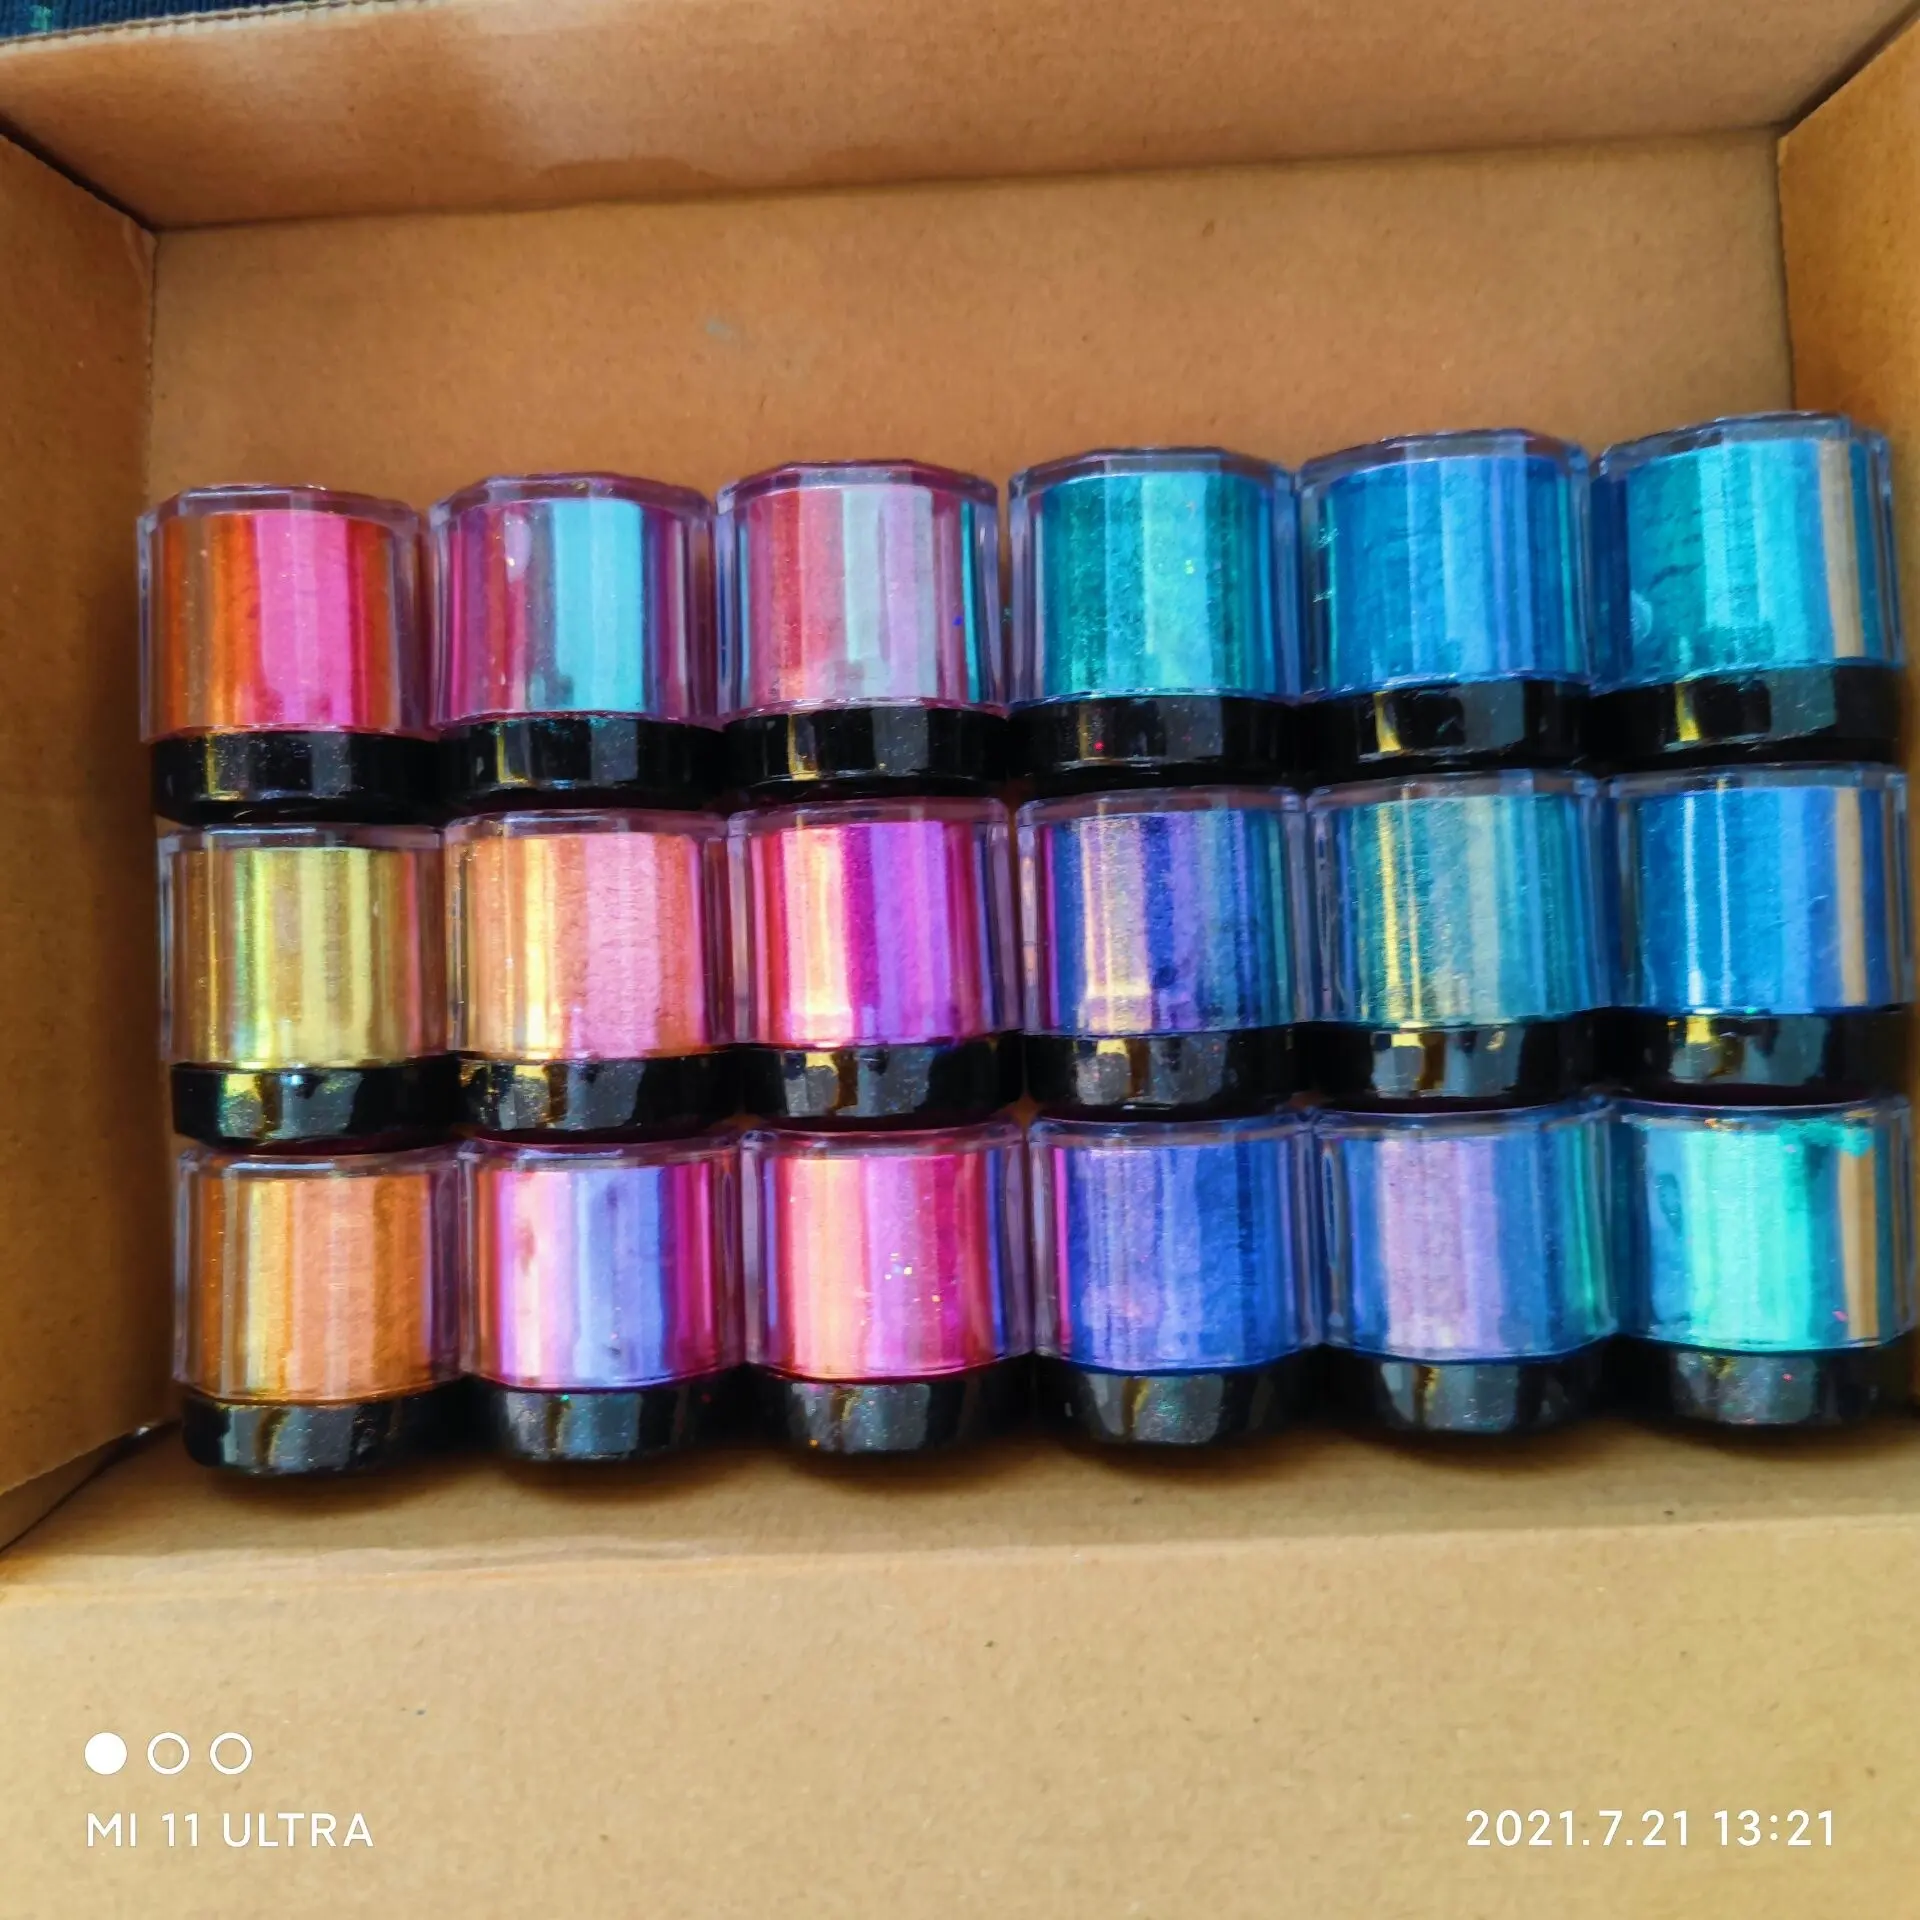 Großhandel 18 Farben Bulk Amazon maßge schneiderte Chamäleon Farbwechsel Glimmer pulver/Chamäleon Pigmente Farb verschiebung Perlen pigmente